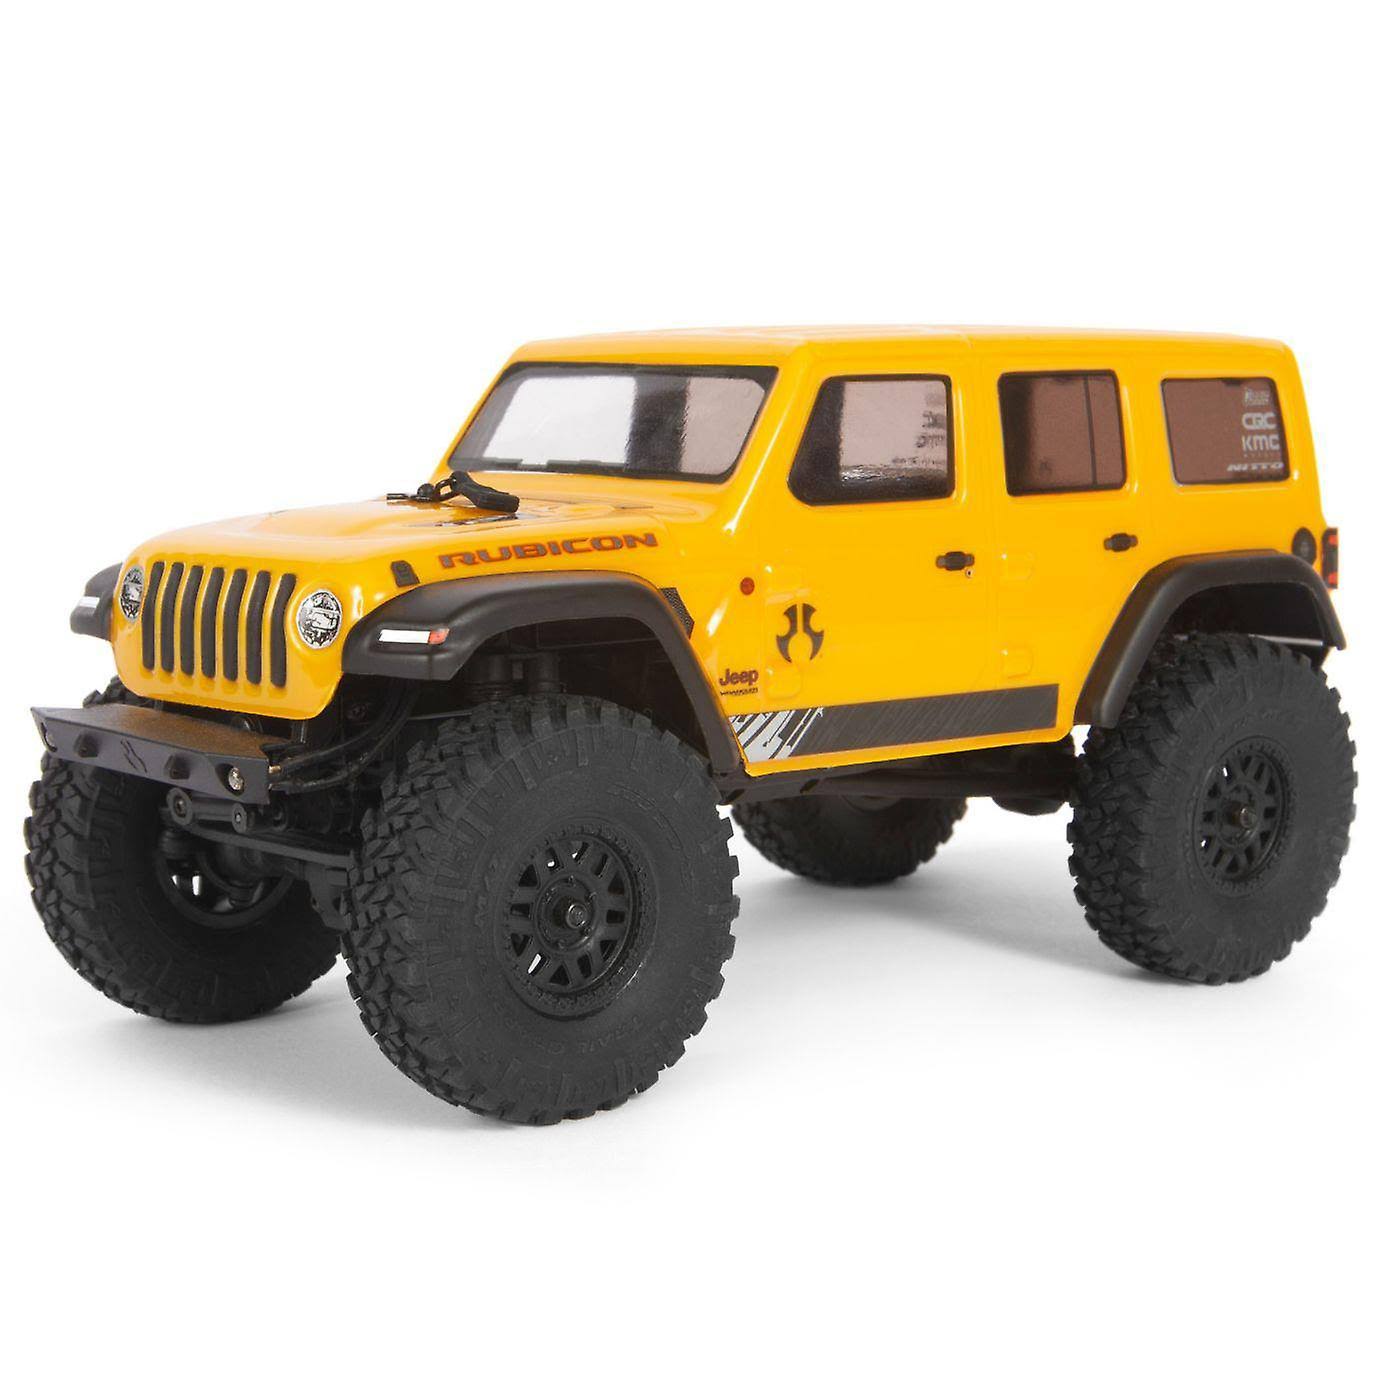 Axial Jeep Wrangler JLU CRC Rock Crawler 4wd Radio Control Toy - Yellow, 1/24 Scale